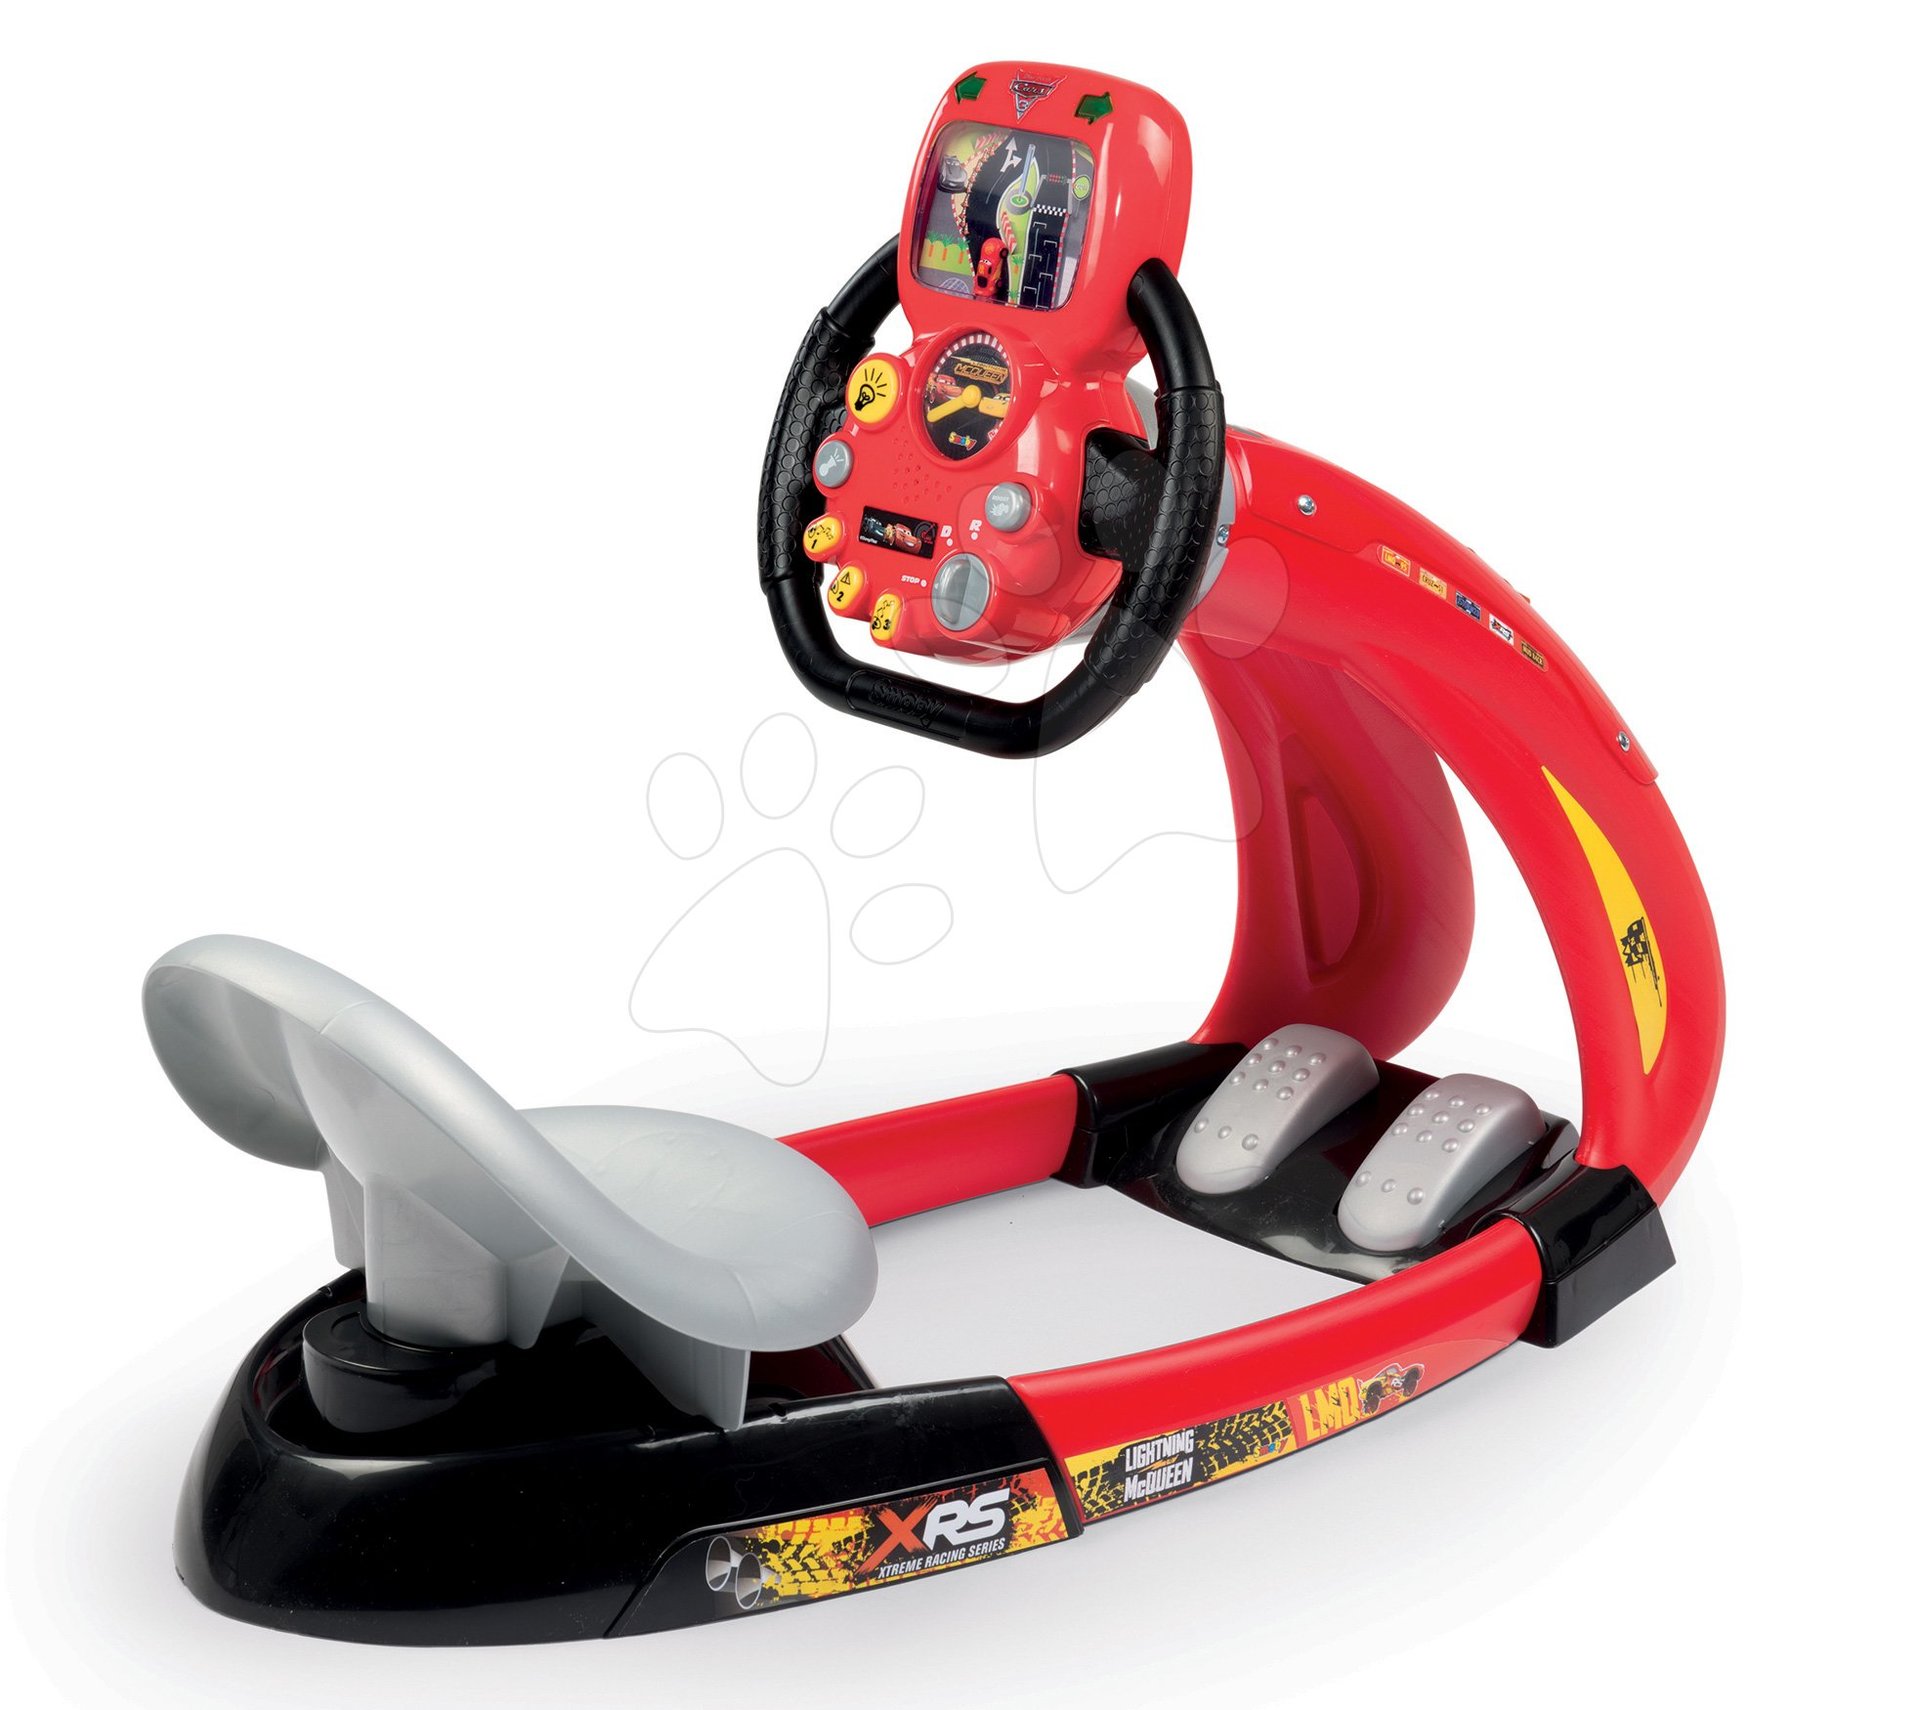 Simulator vožnje za otroke - Simulator vožnje Flash McQueen Cars XRS Smoby elektronski z dirkalnim simulatorjem